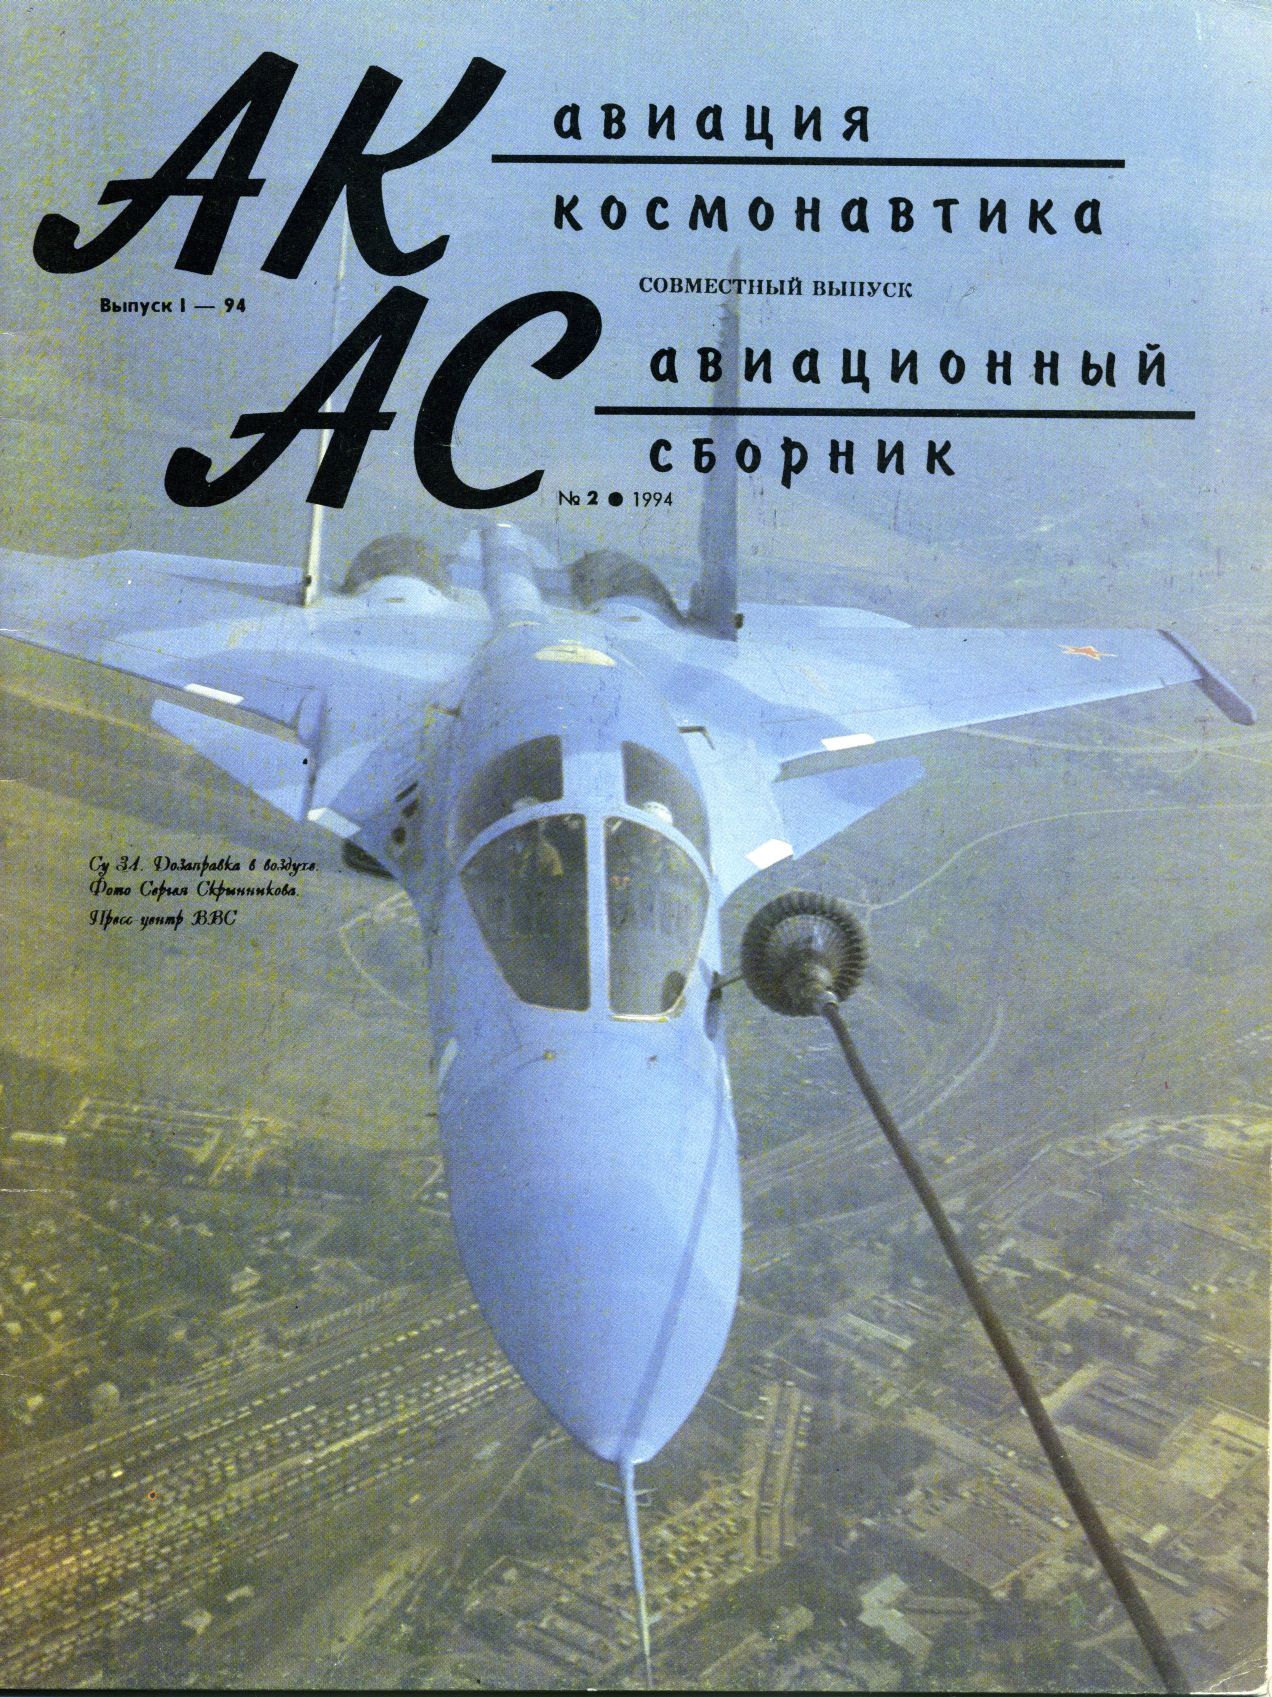  Авиация и космонавтика Журнал: Авиация и космонавтика 1994 01 + Авиационный сборник 1994 02